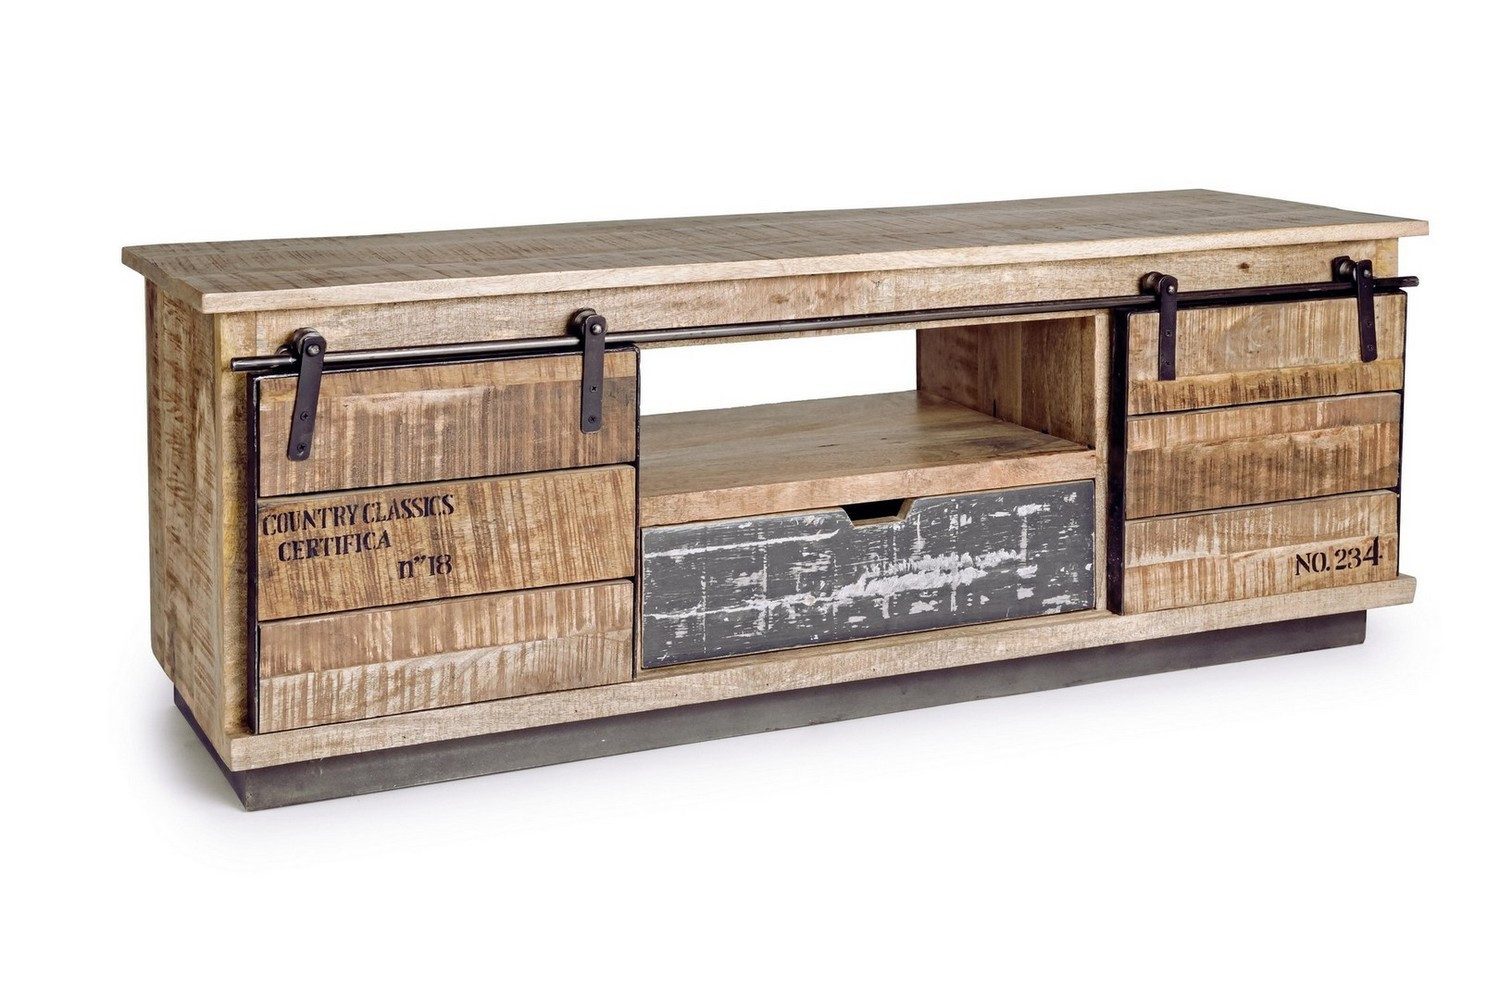 Natur24 Lowboard TV-Board Tudor 130x40x50cm Mango-Holz Schiebetüren Schublade und Fach